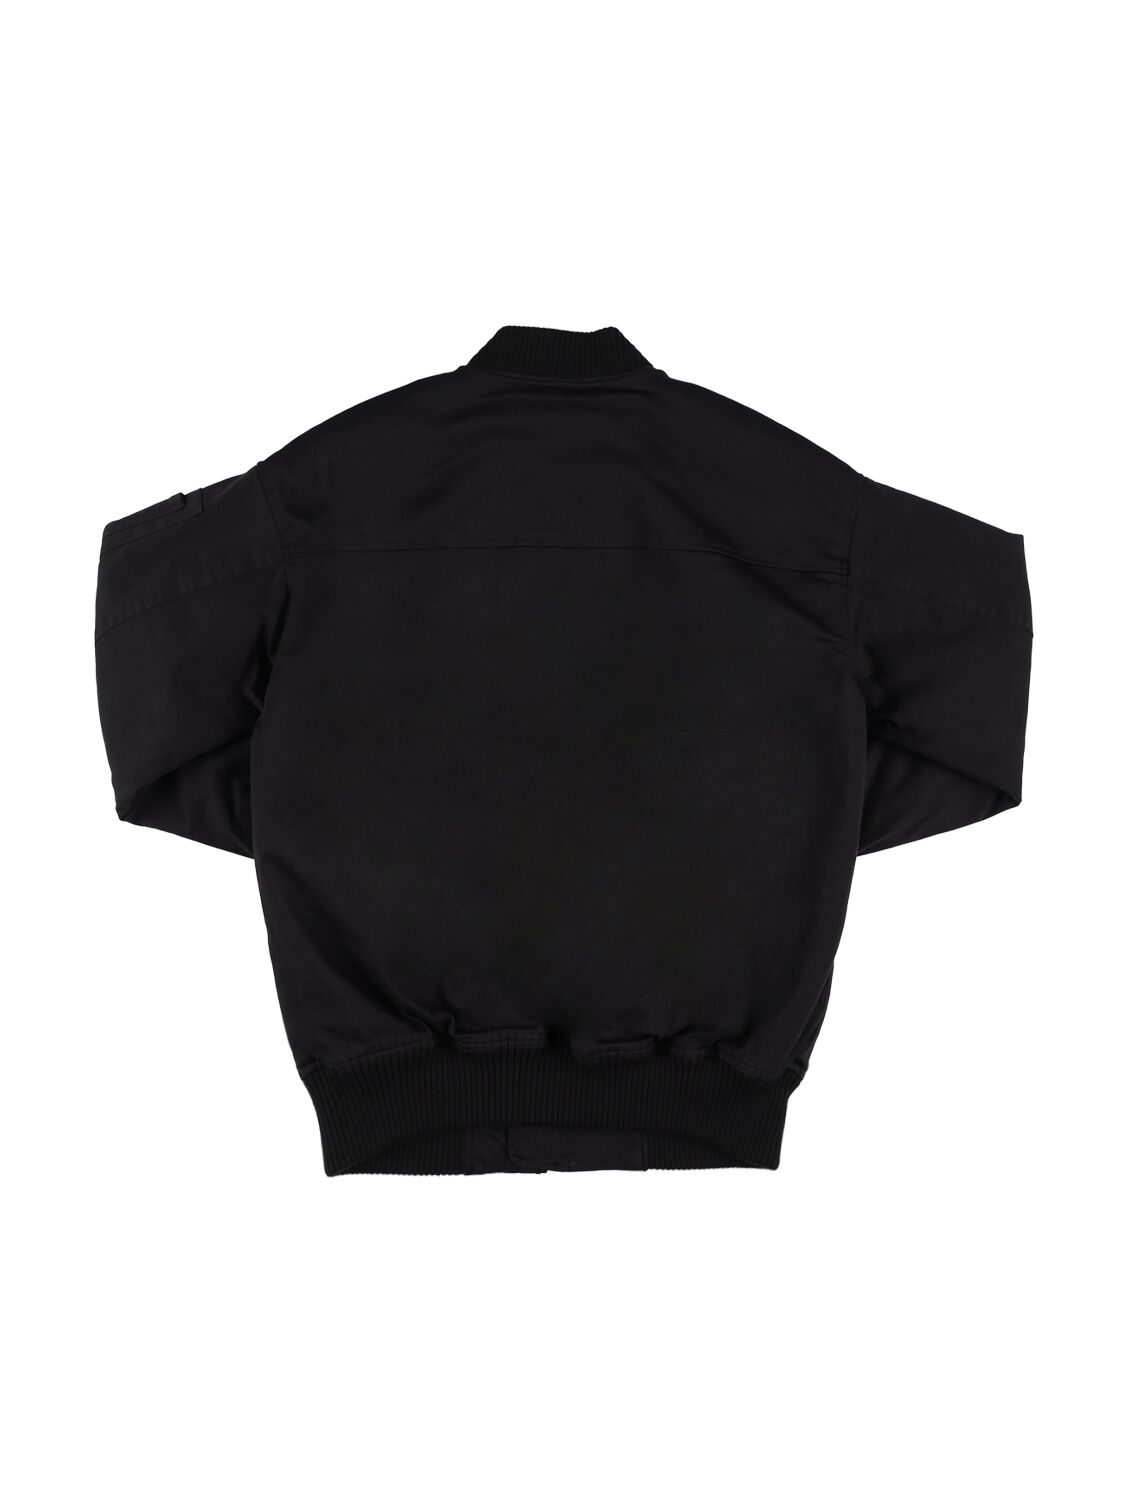 Shop Dsquared2 Cotton Gabardine Bomber Jacket In Black